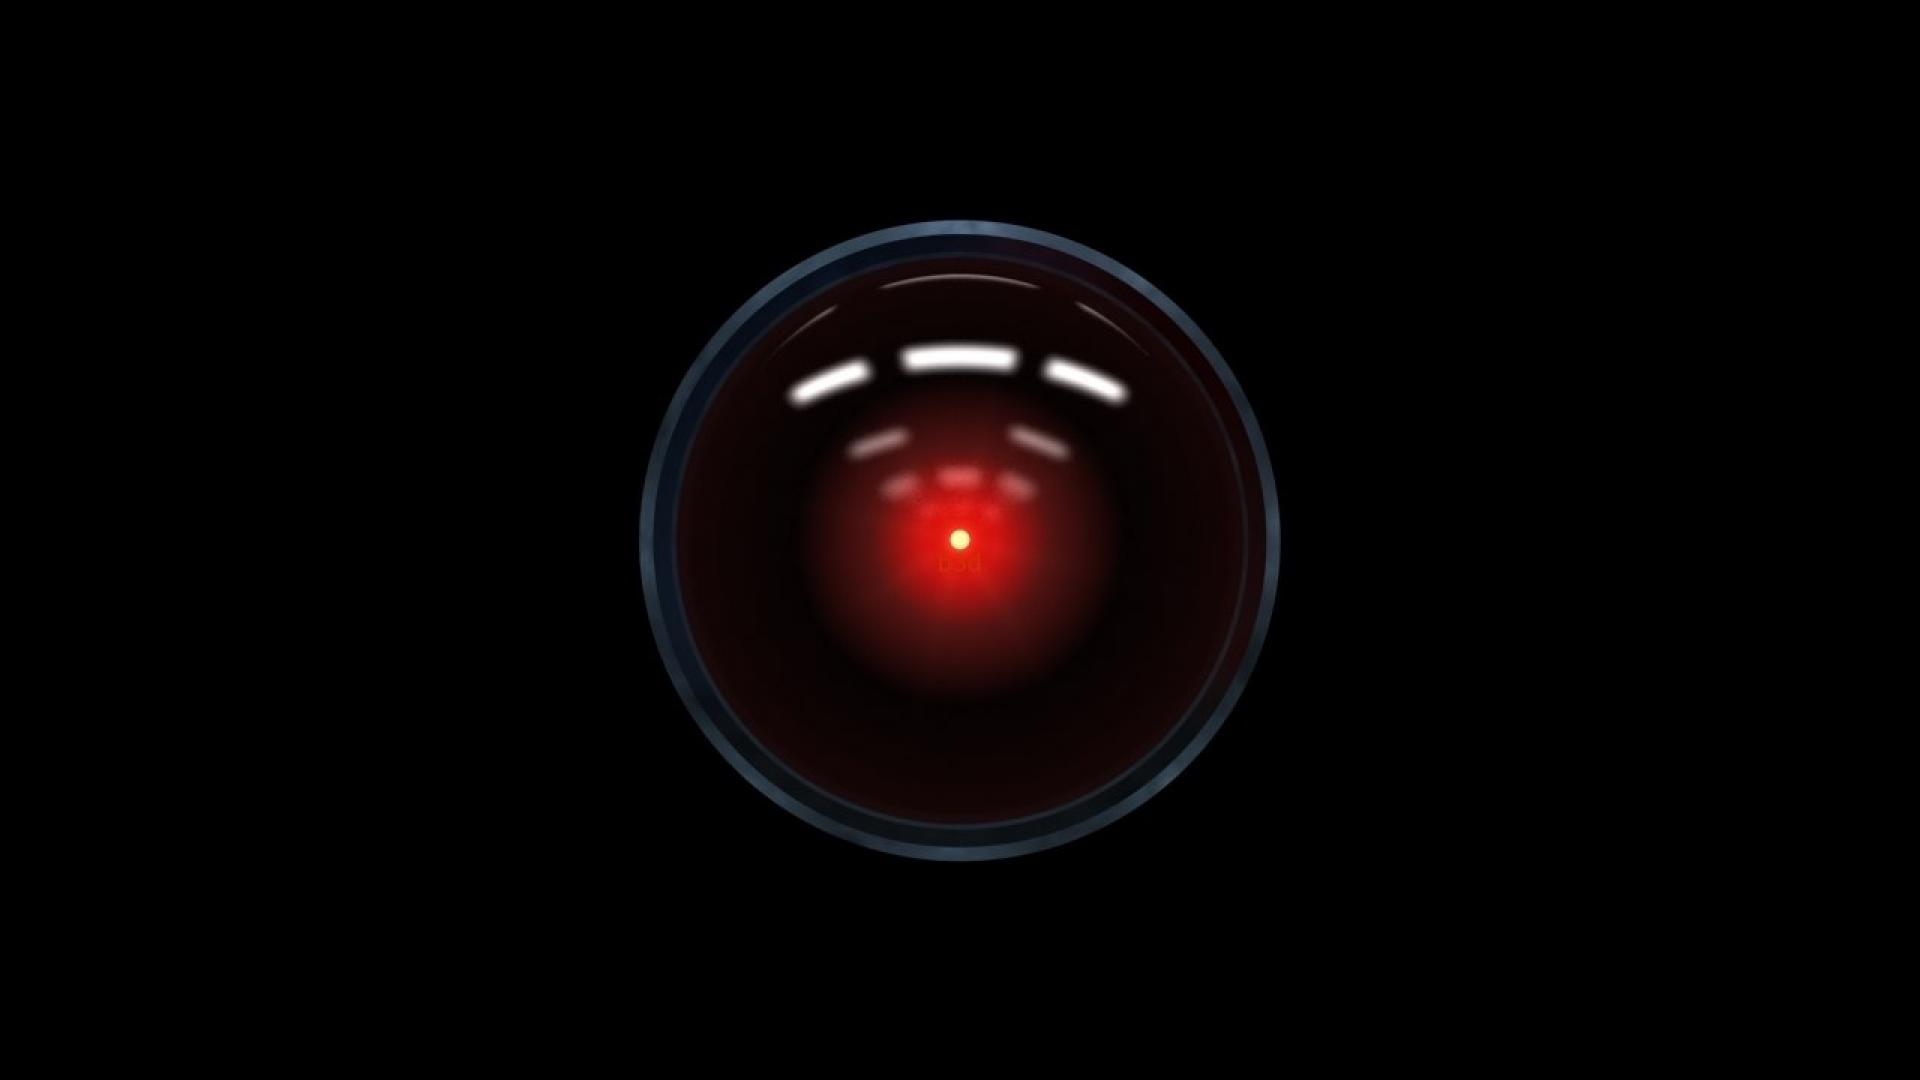 HAL 9000 nigdy nie pojawi się: emocje nie programuje